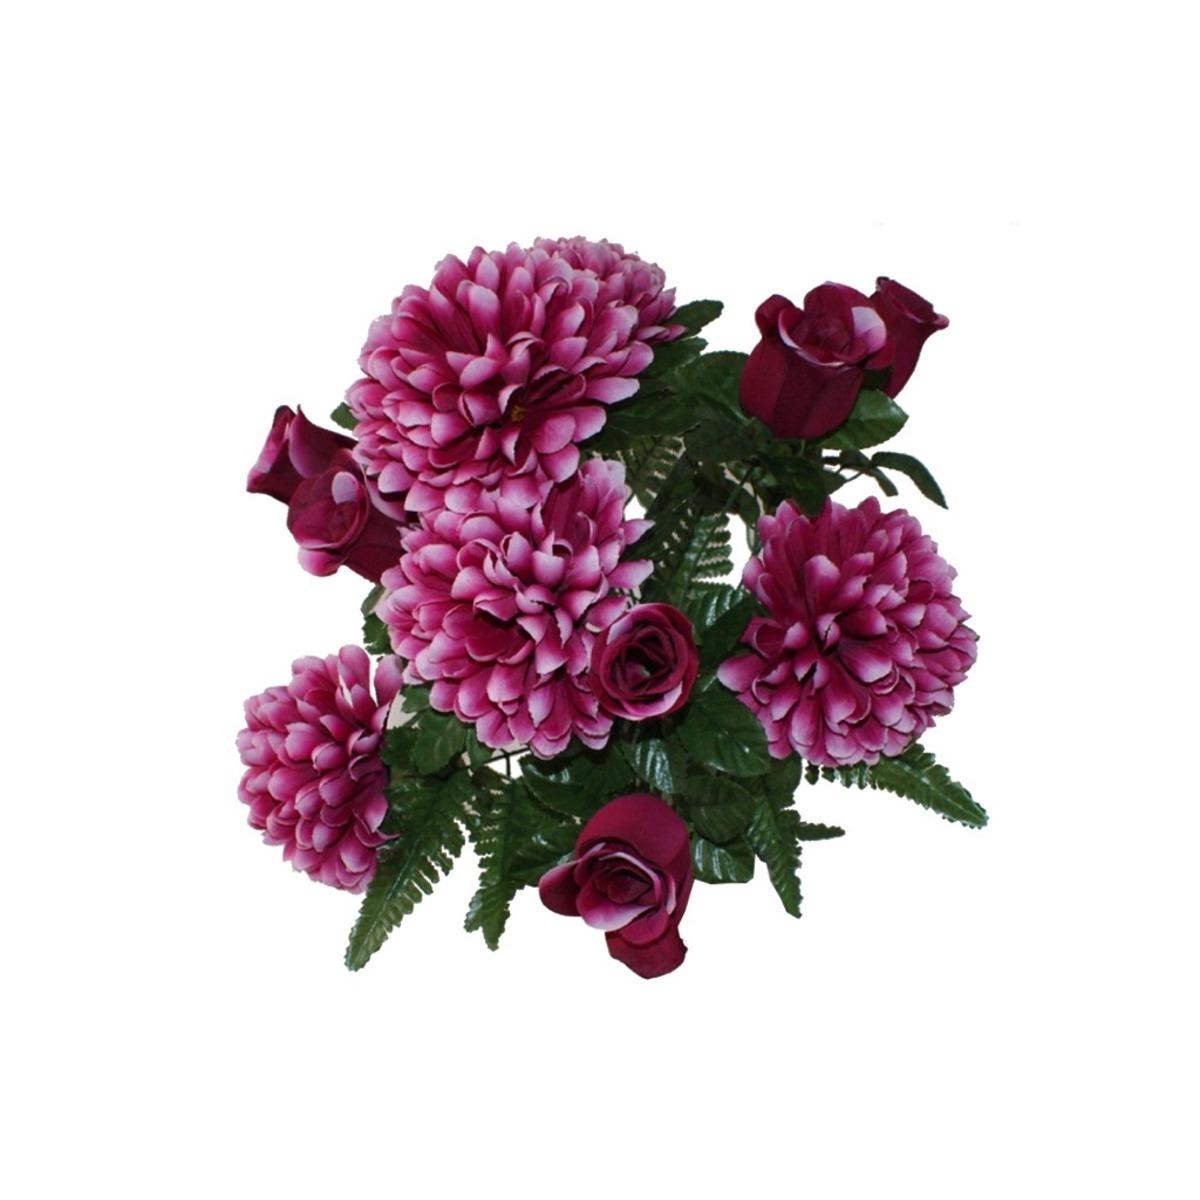 Piquet 12 roses + chrysanthèmes - Hauteur 50 cm - Rose fushia